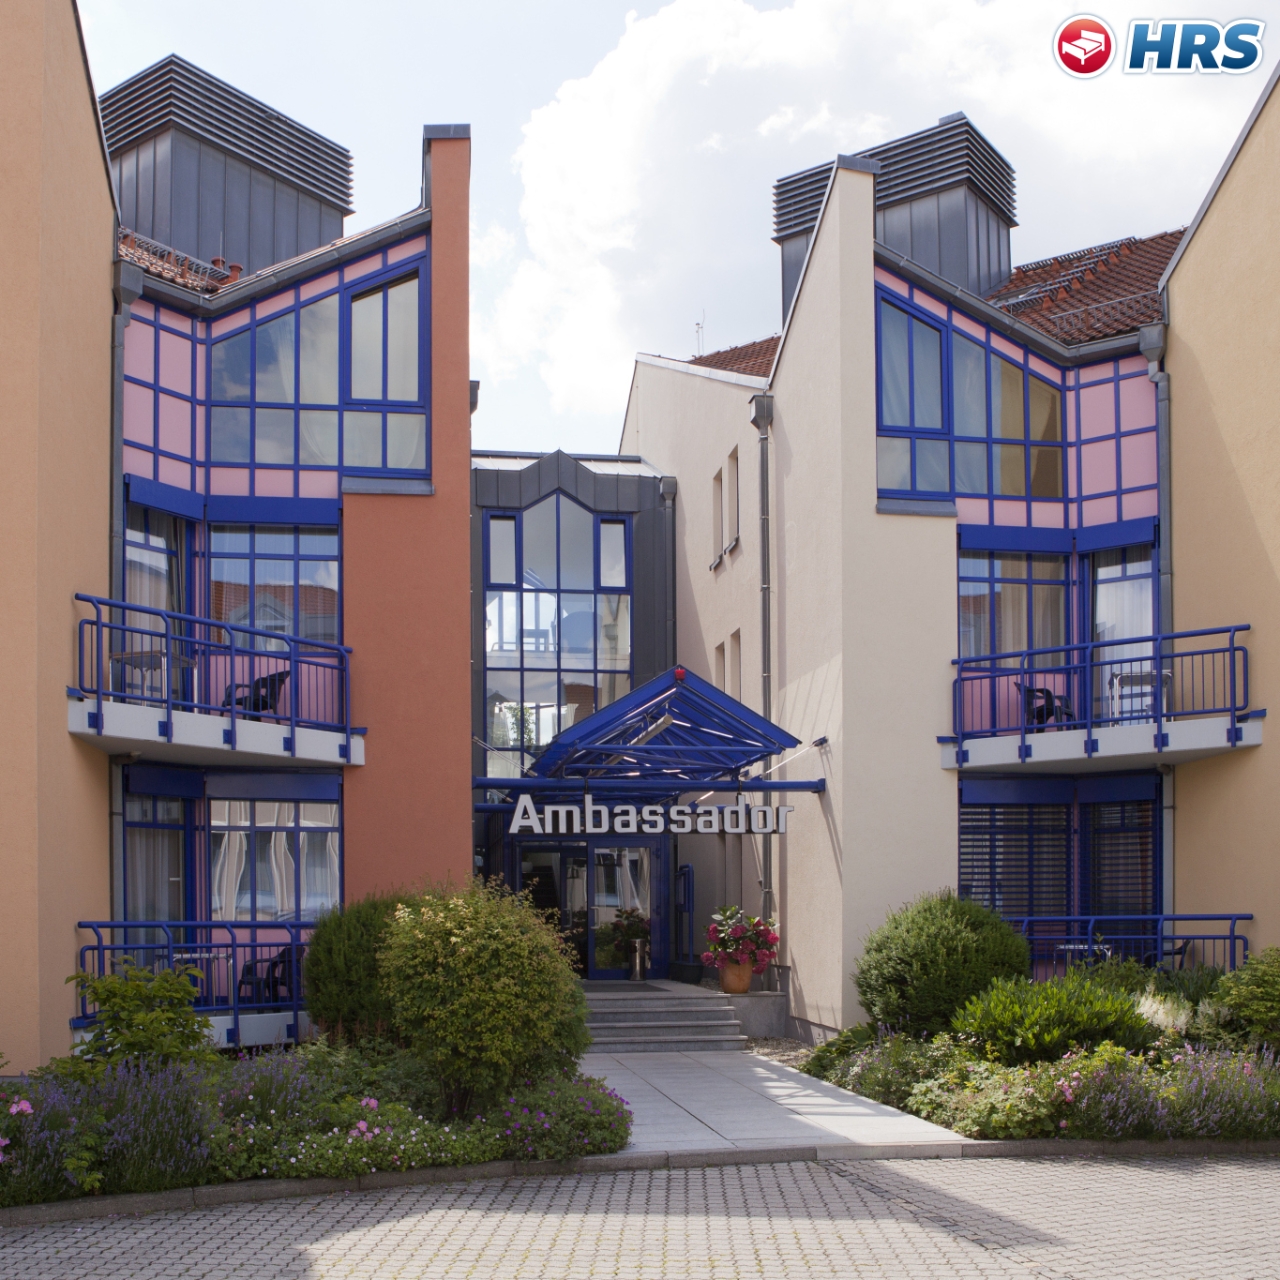 Hotel Ambassador Bayern bei HRS günstig buchen | HRS